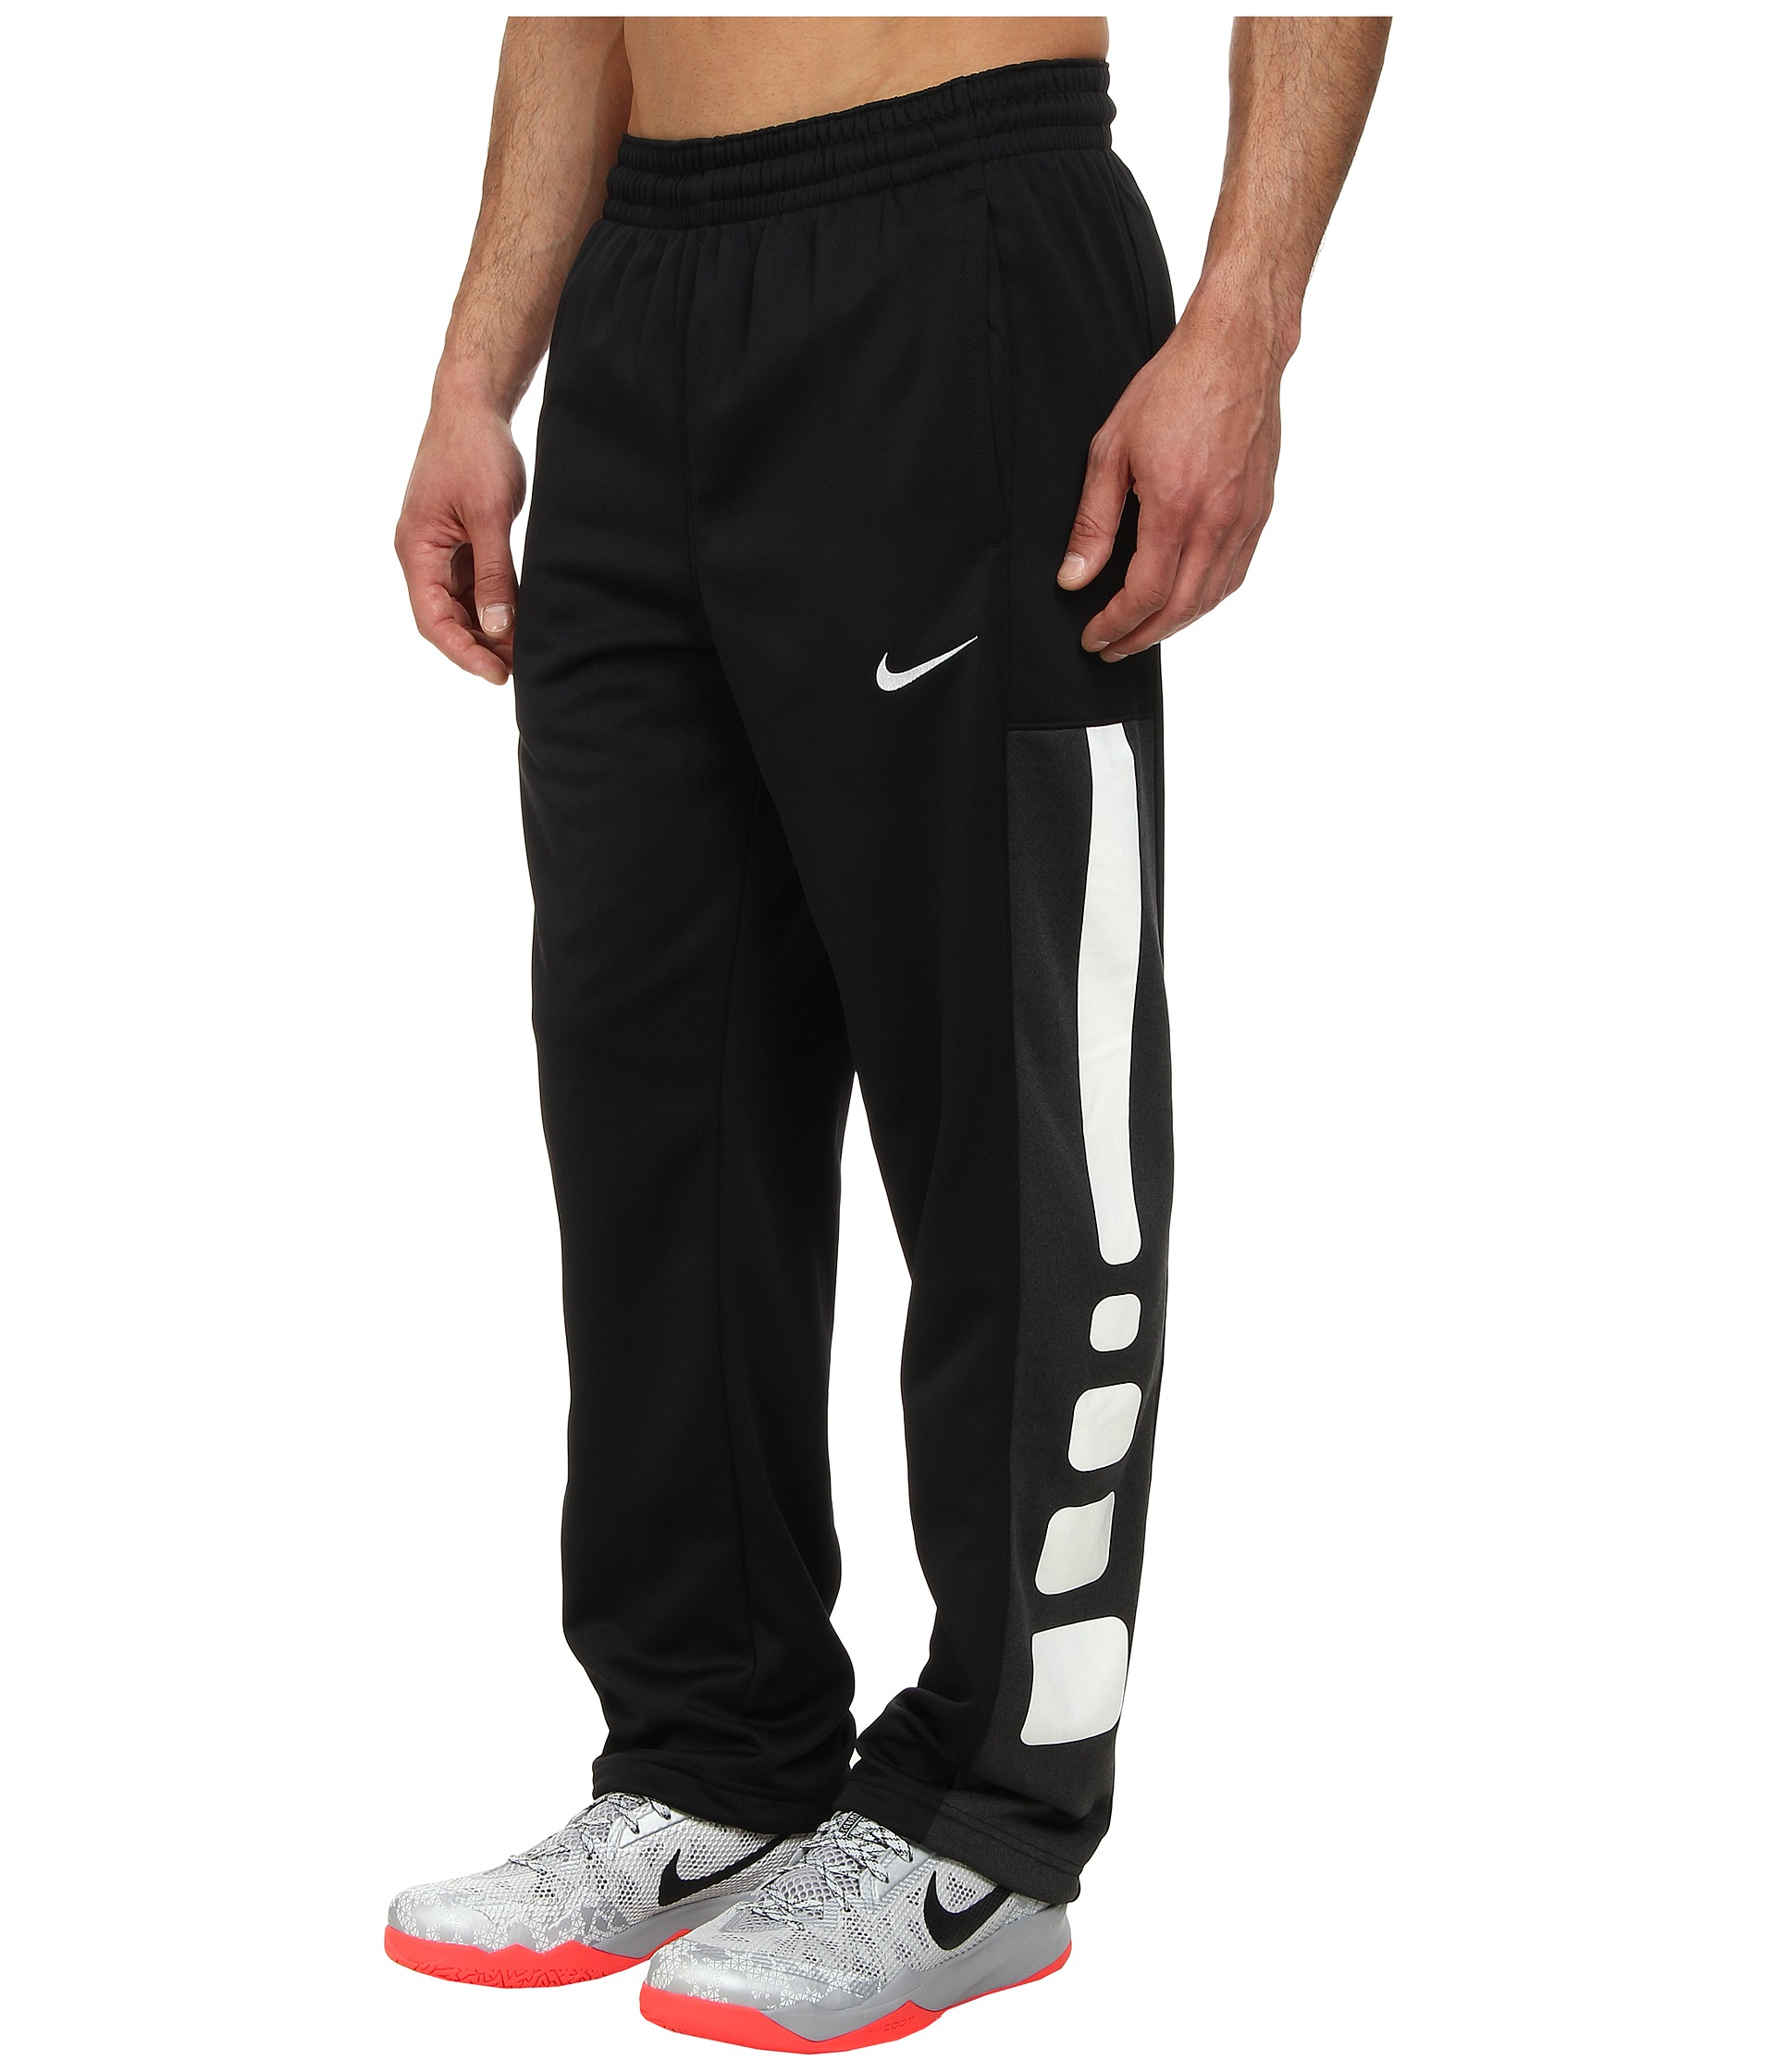 Nike Elite Stripe Performance Fleece Pant in Black/Black  Heather/White/White (Black) for Men | Lyst